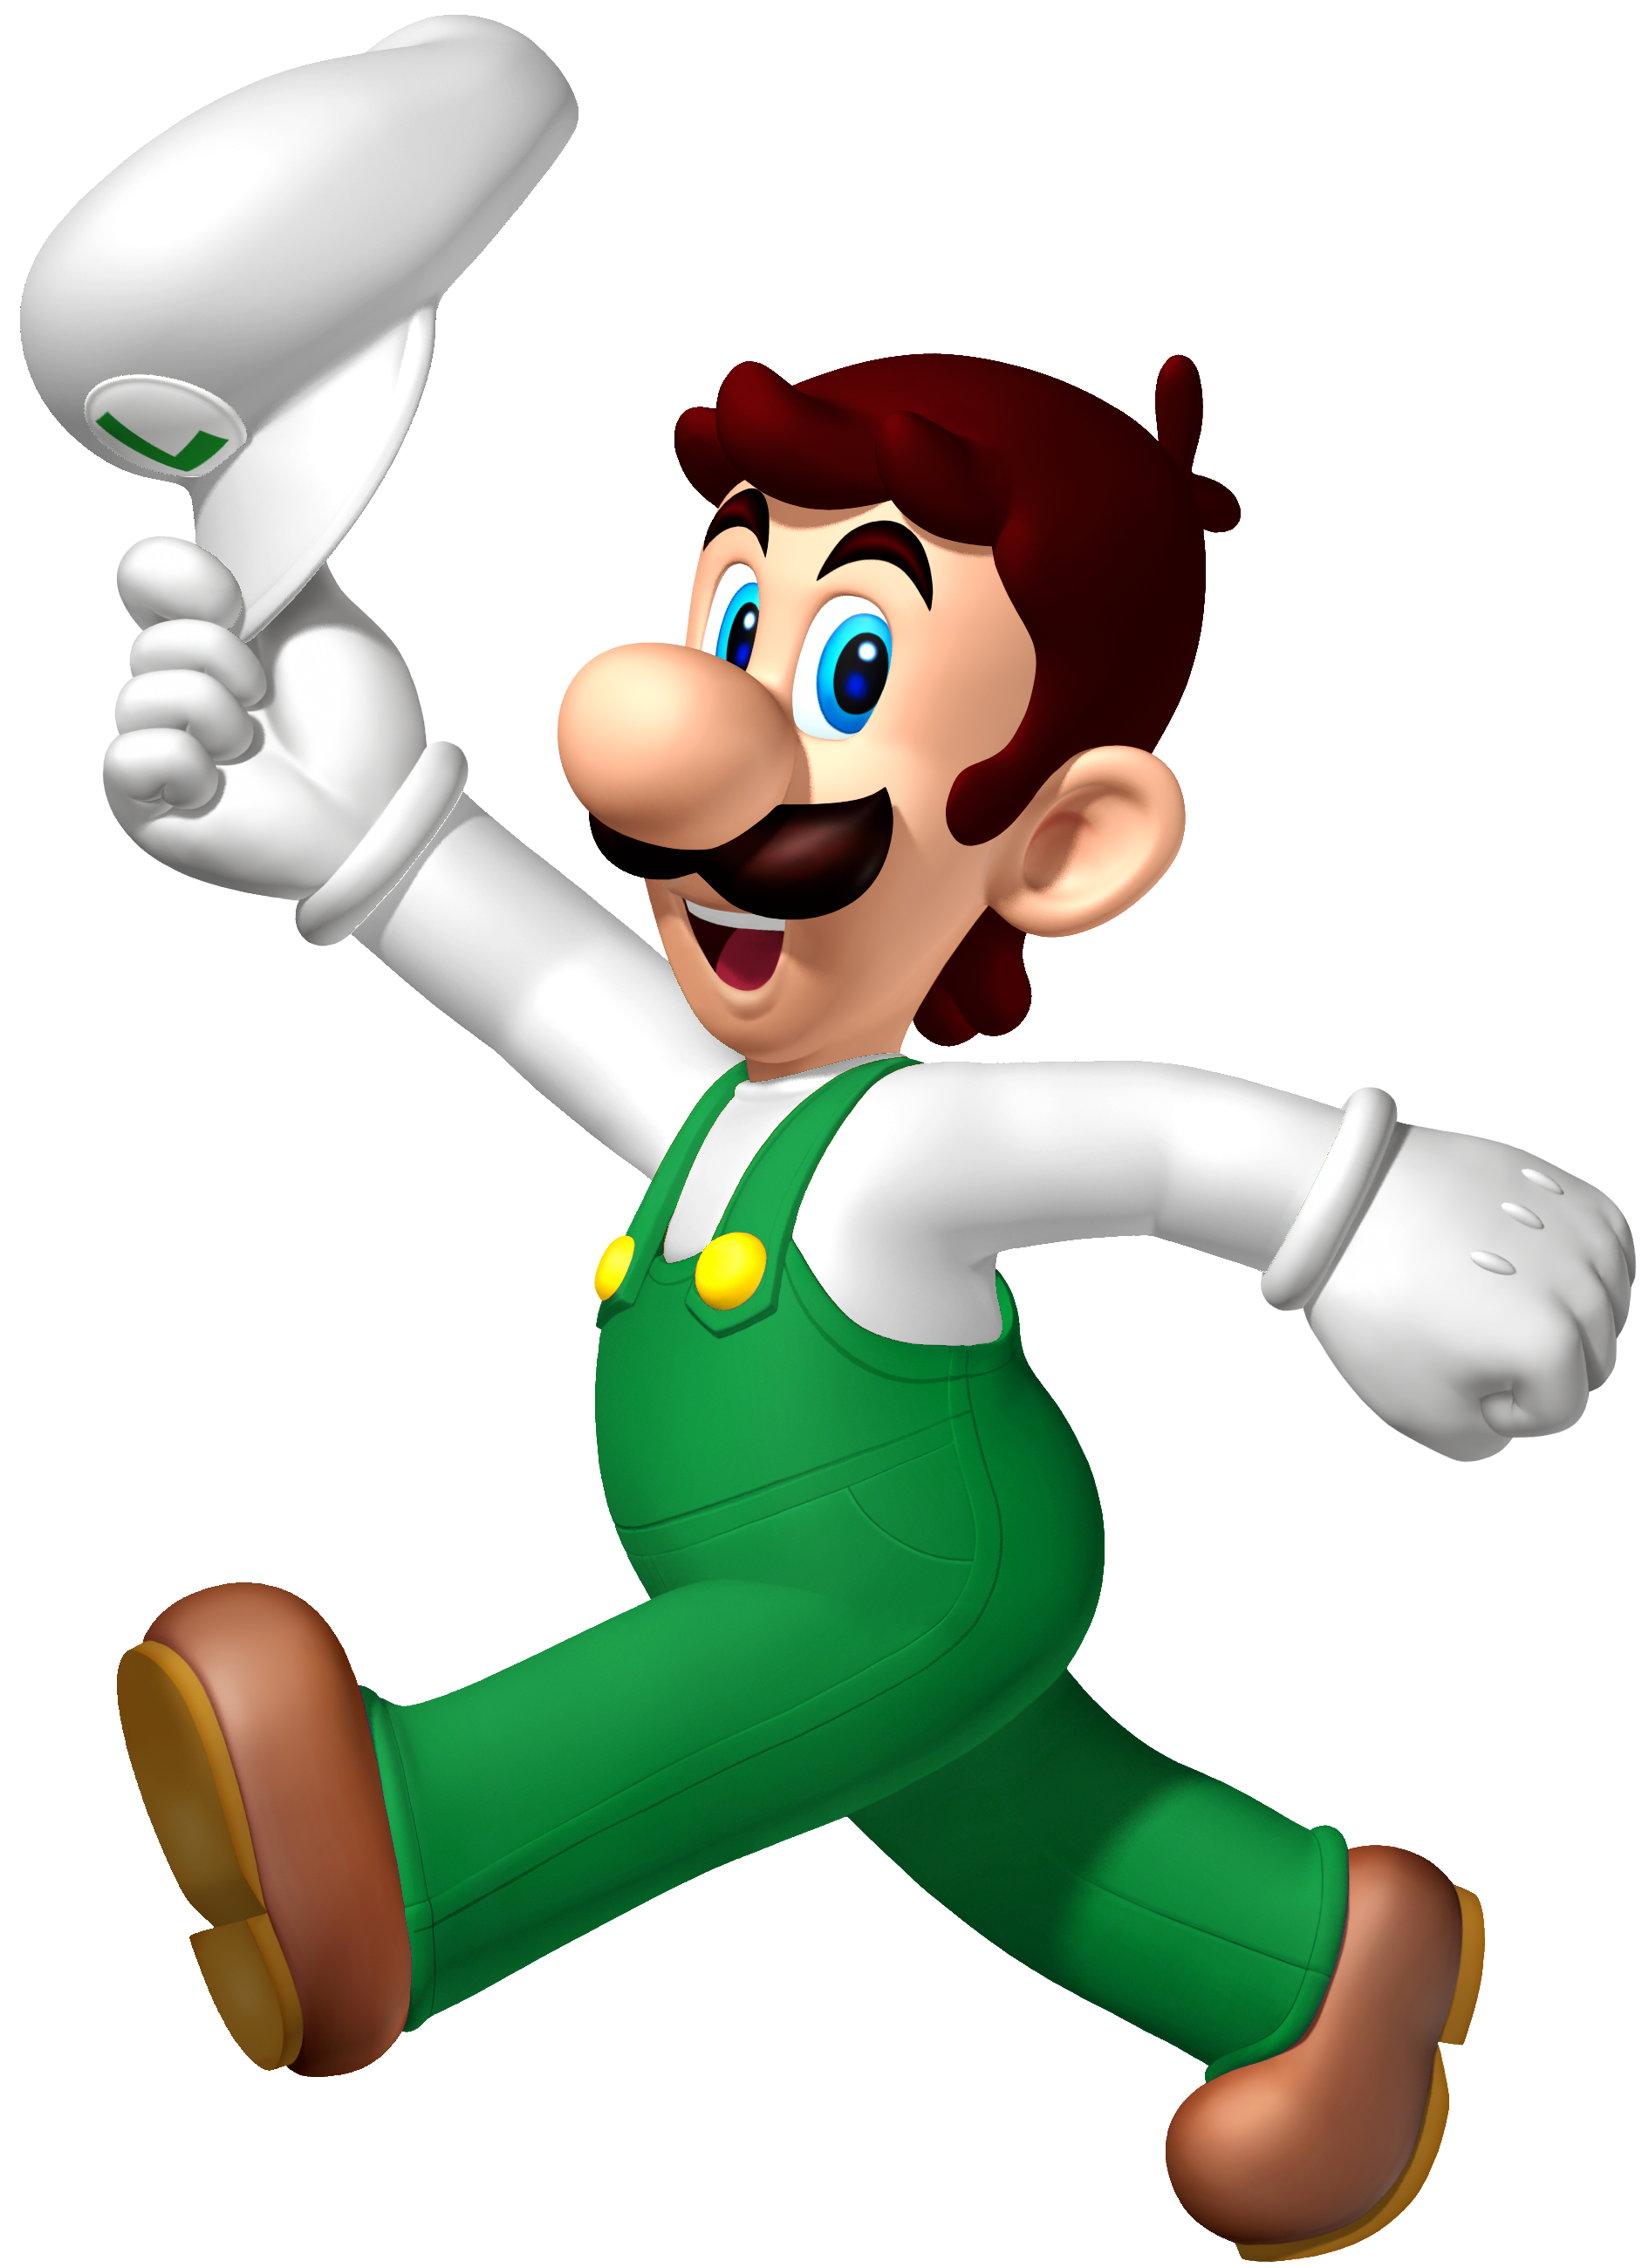 Luigi's Mansion 4, Video Game Fanon Wiki